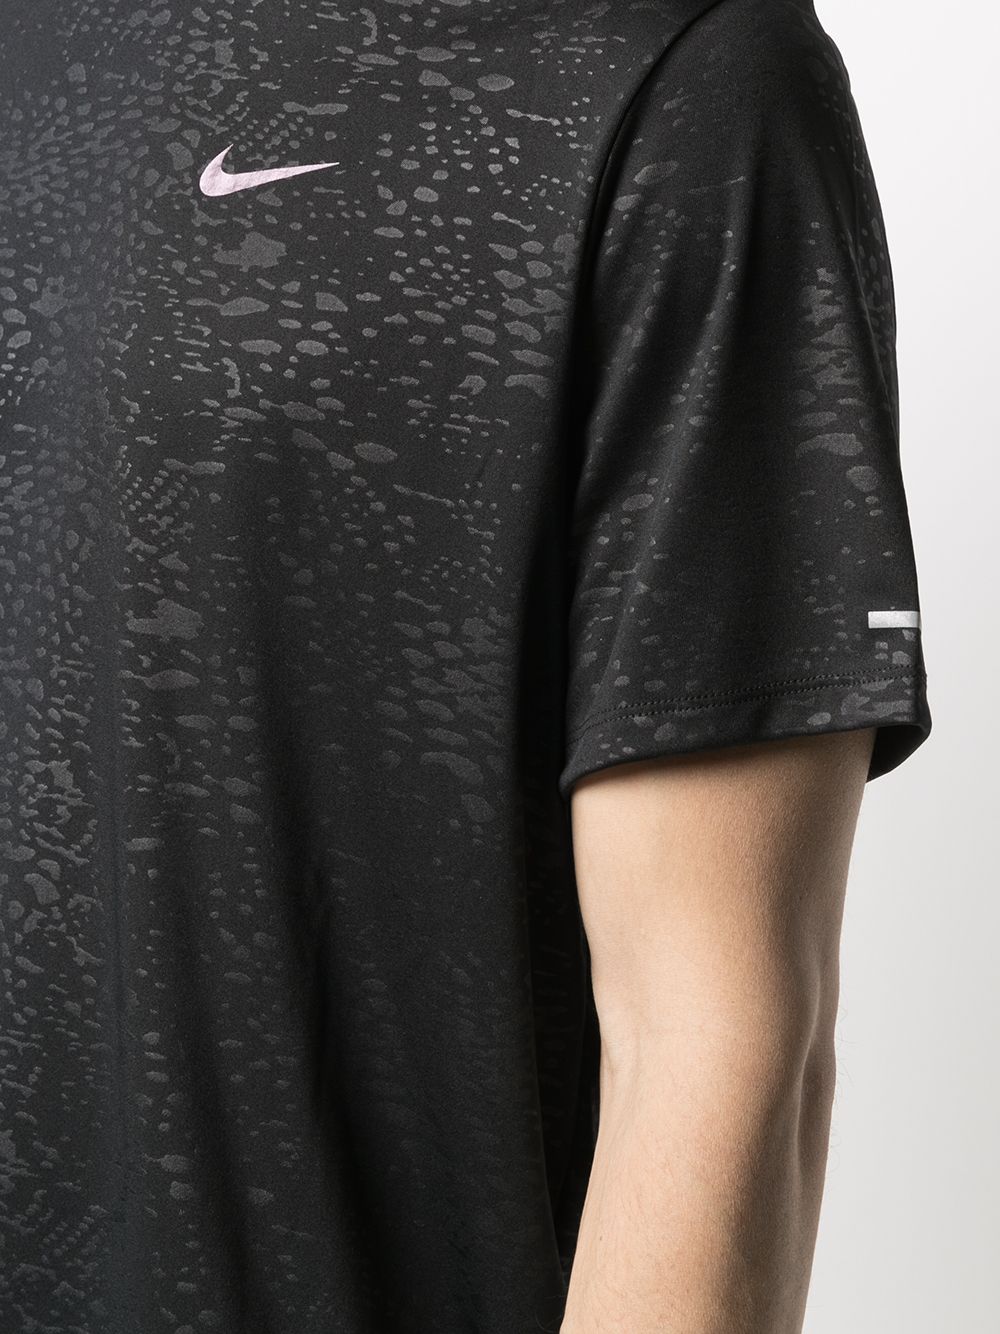 фото Nike футболка с логотипом